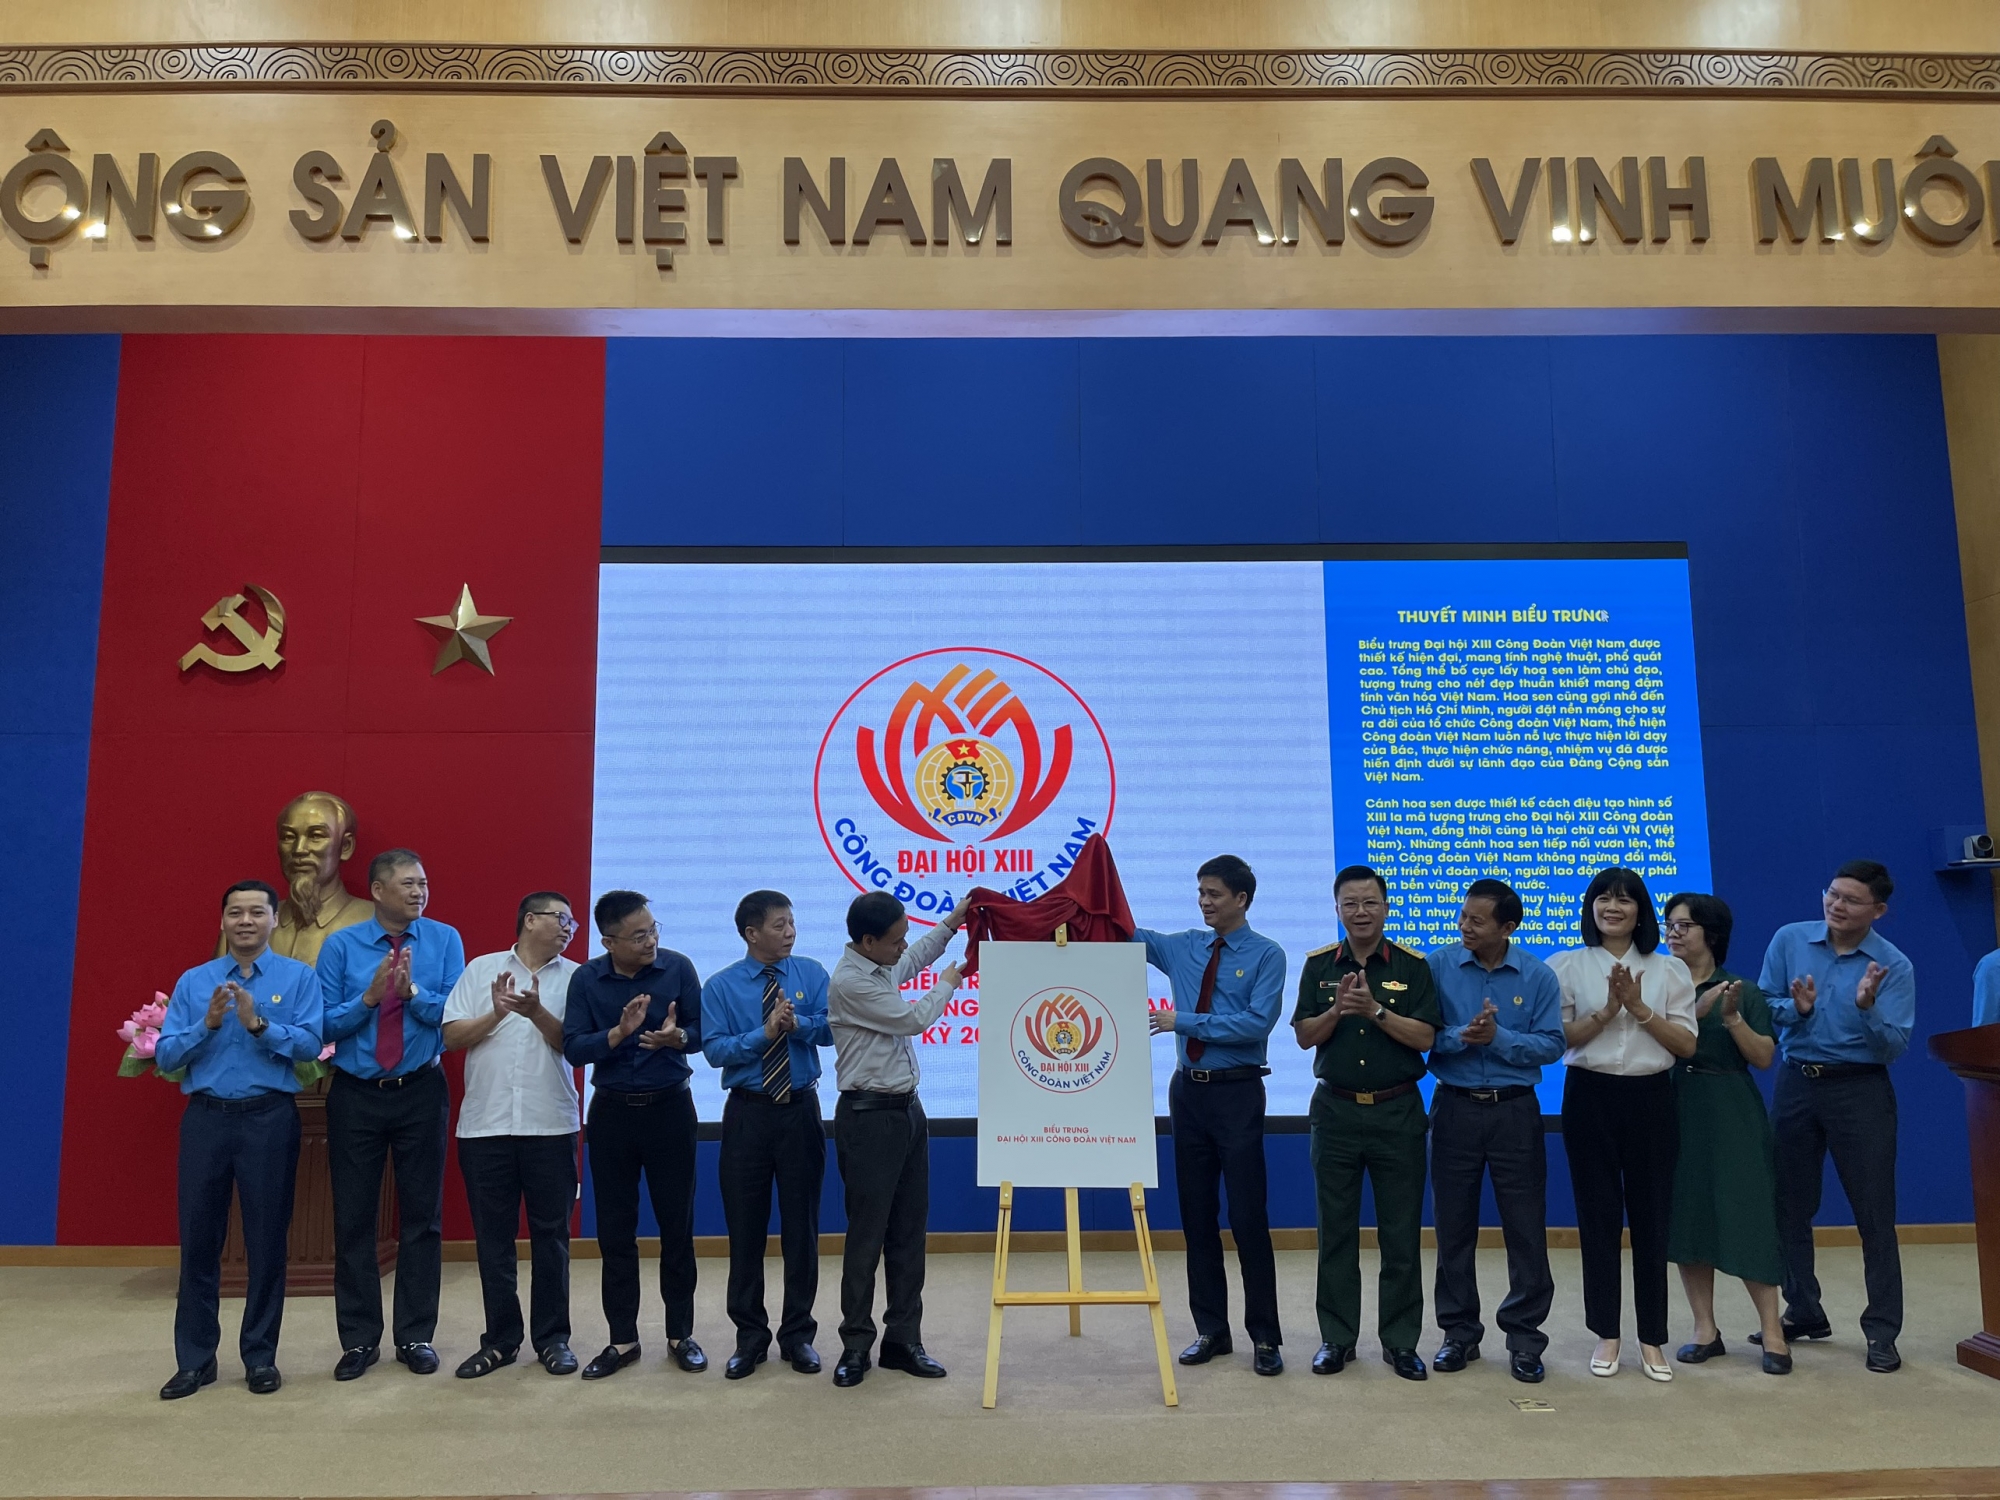 Trao giải Cuộc thi thiết kế Biểu trưng và Tranh cổ động Đại hội XIII Công Đoàn Việt Nam